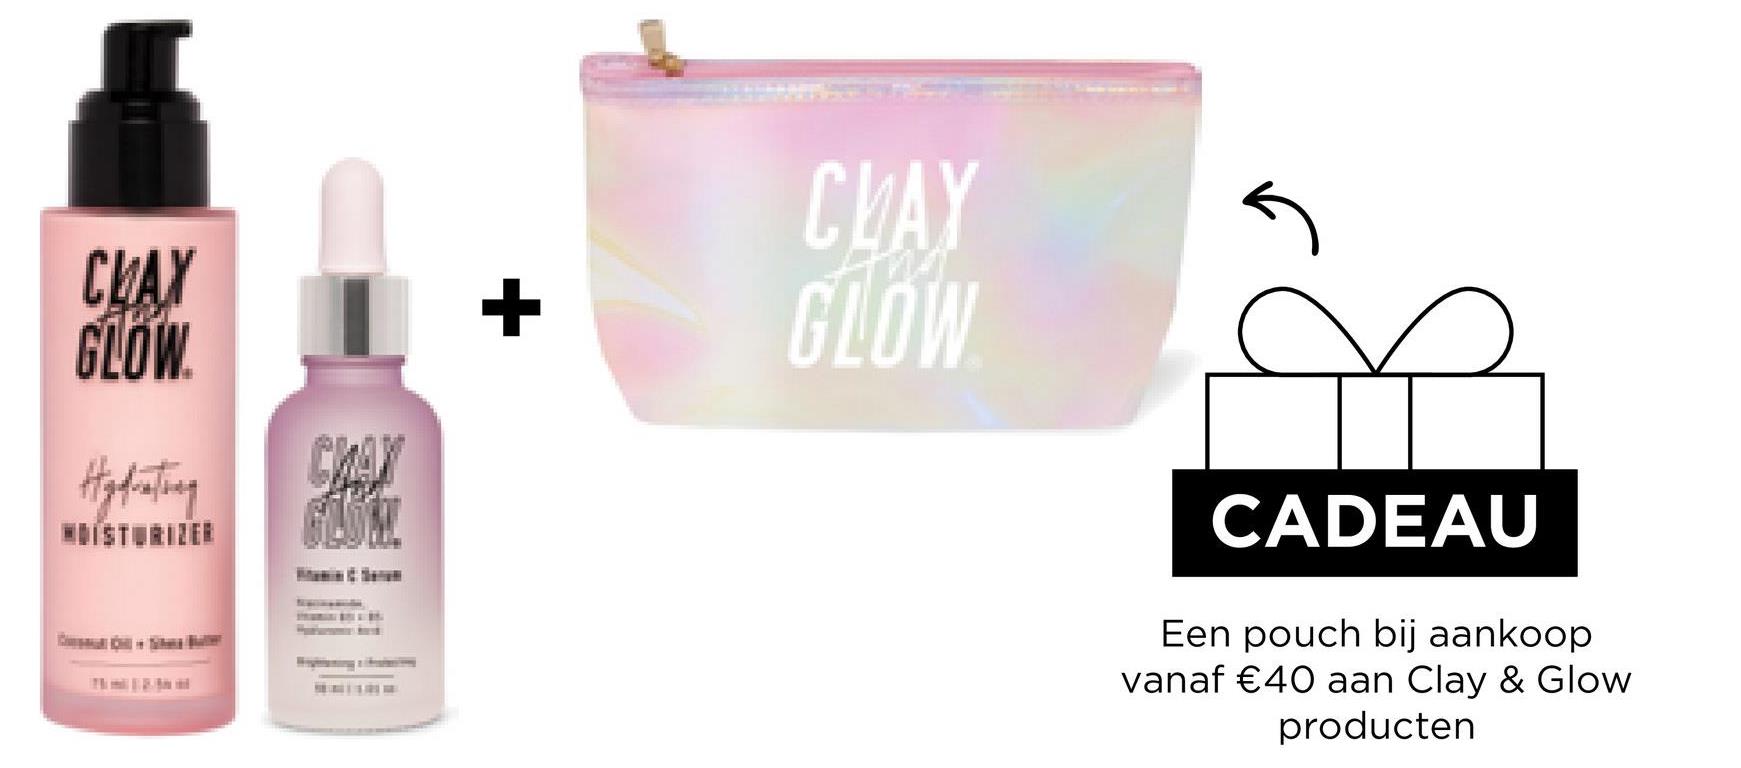 CLAY
GLOW.
104
Hydrating
GLOM
14/01
+
CLAY
GLOW
CADEAU
Een pouch bij aankoop
vanaf €40 aan Clay & Glow
producten